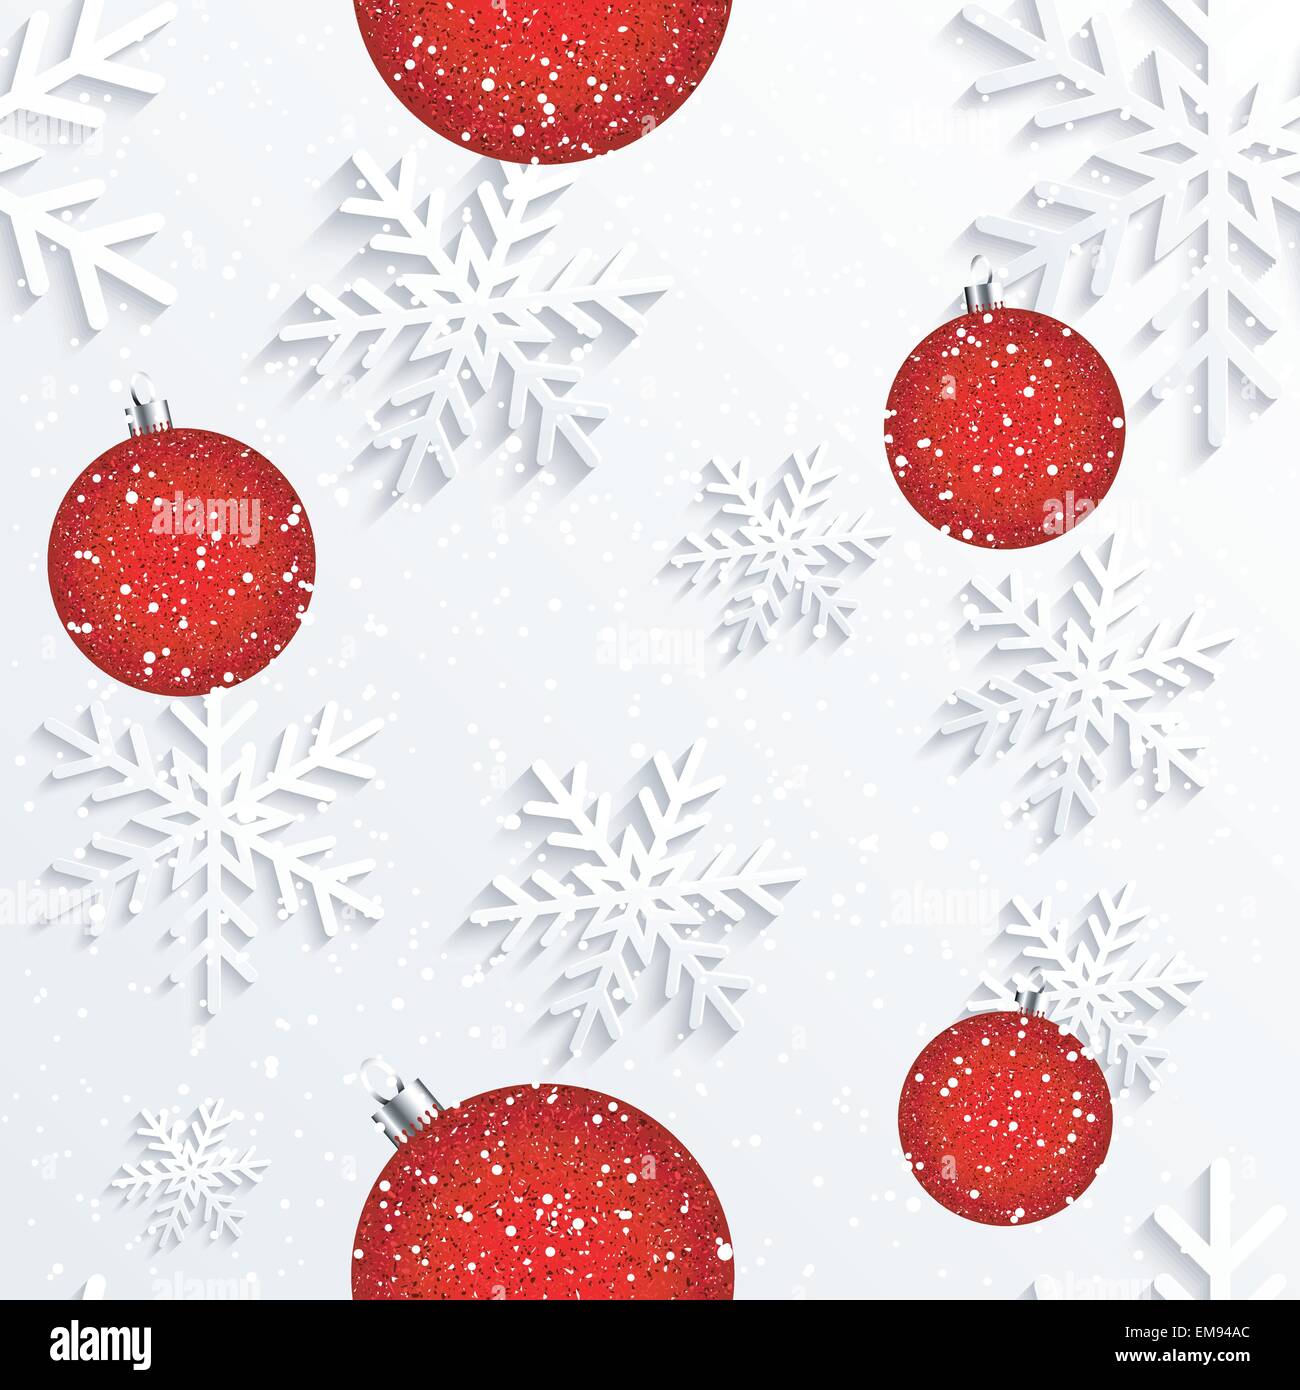 Copo de Nieve de Navidad fondo blanco. Ilustración del Vector